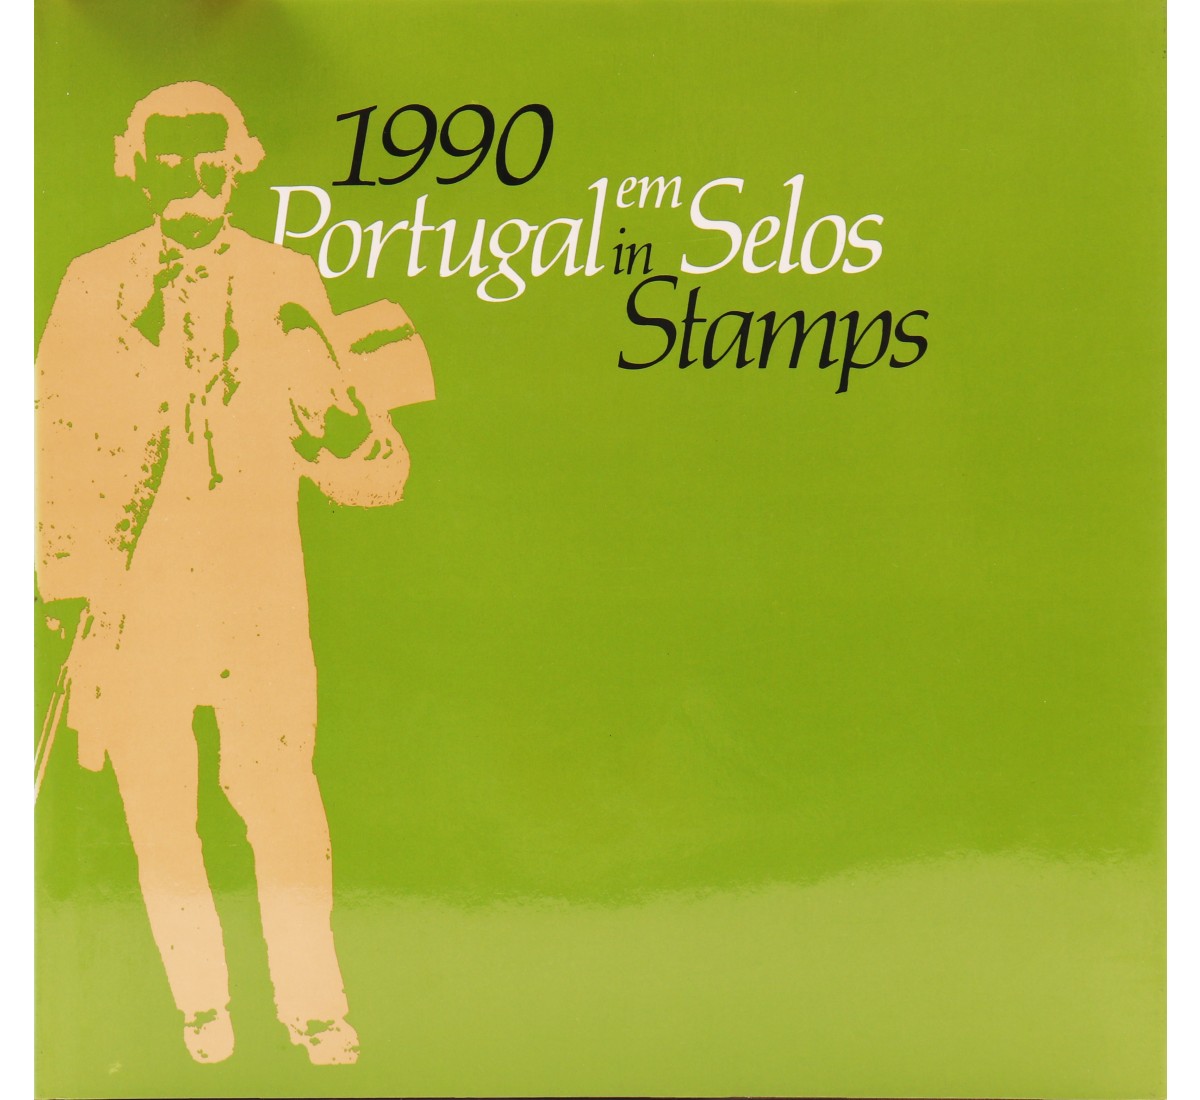 Livro anual dos CTT Portugal em selos 1990